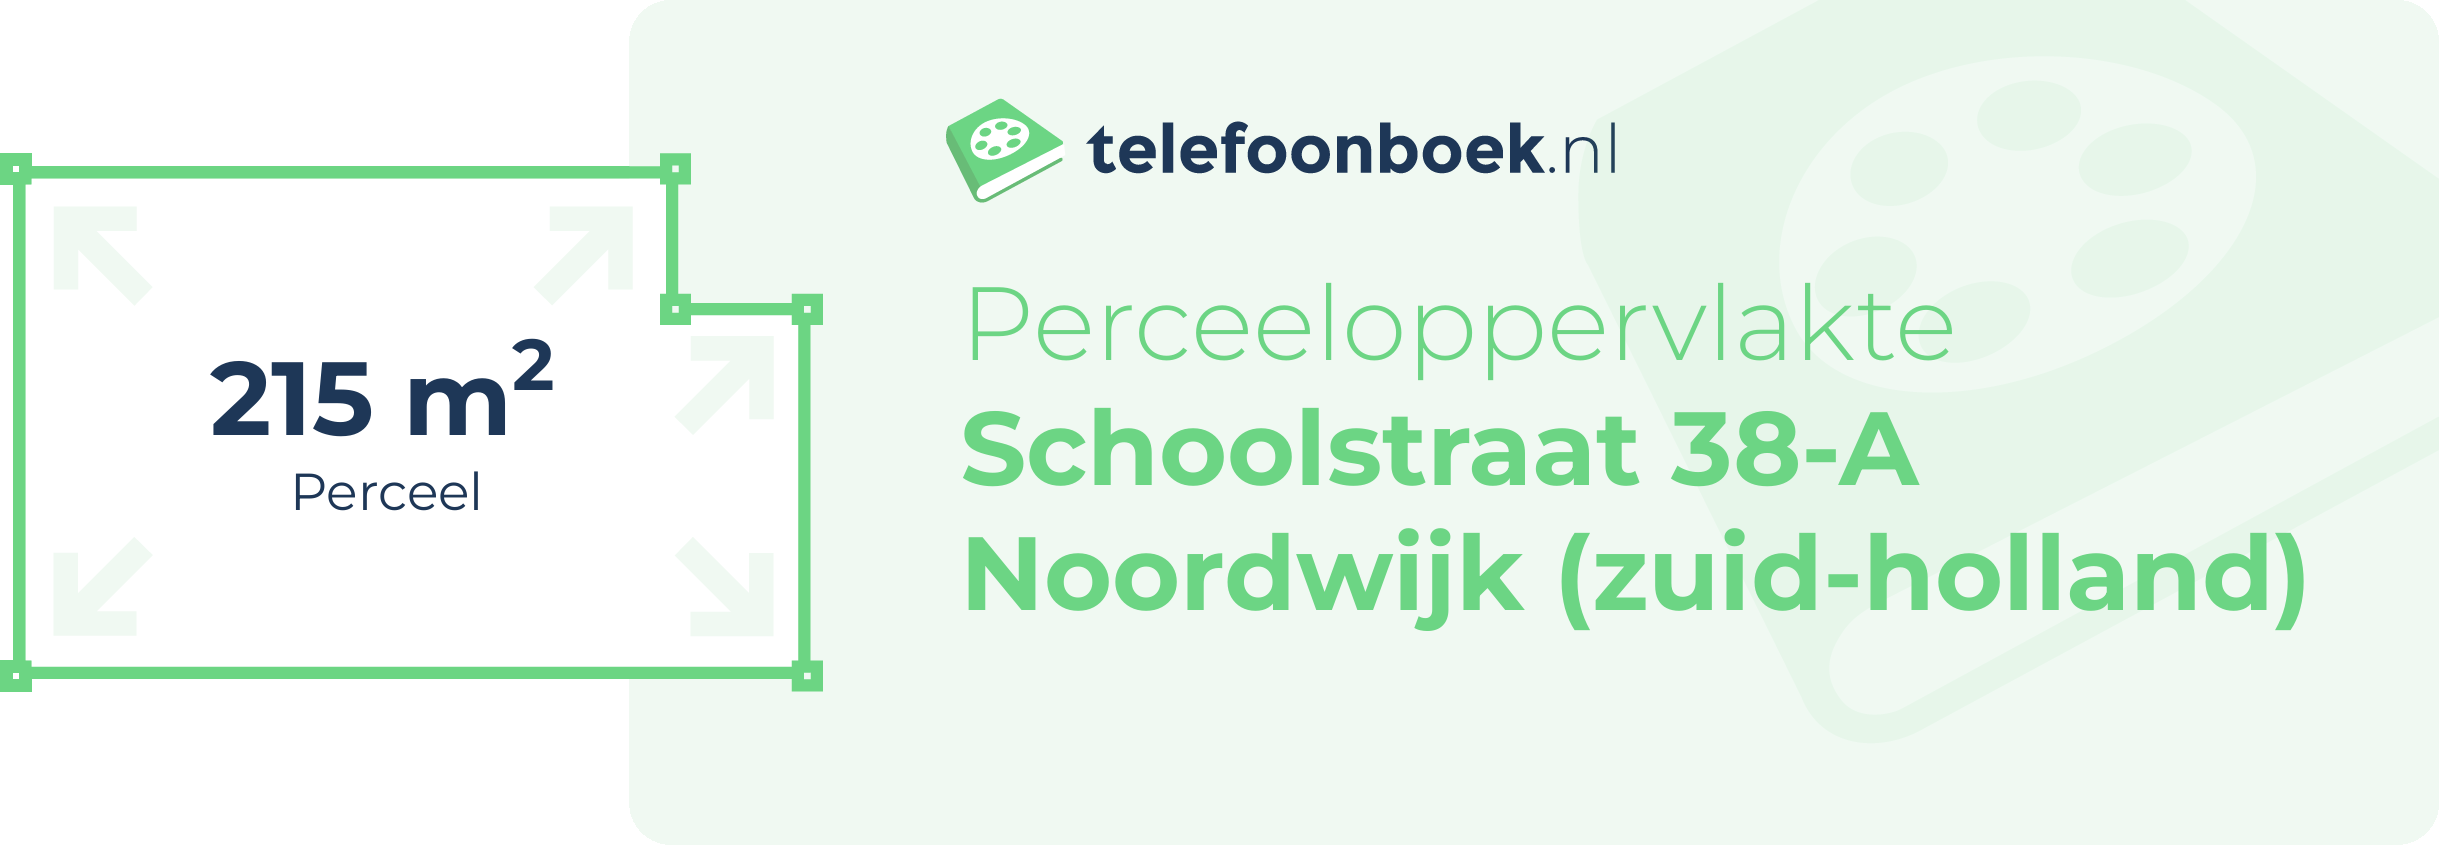 Perceeloppervlakte Schoolstraat 38-A Noordwijk (Zuid-Holland)